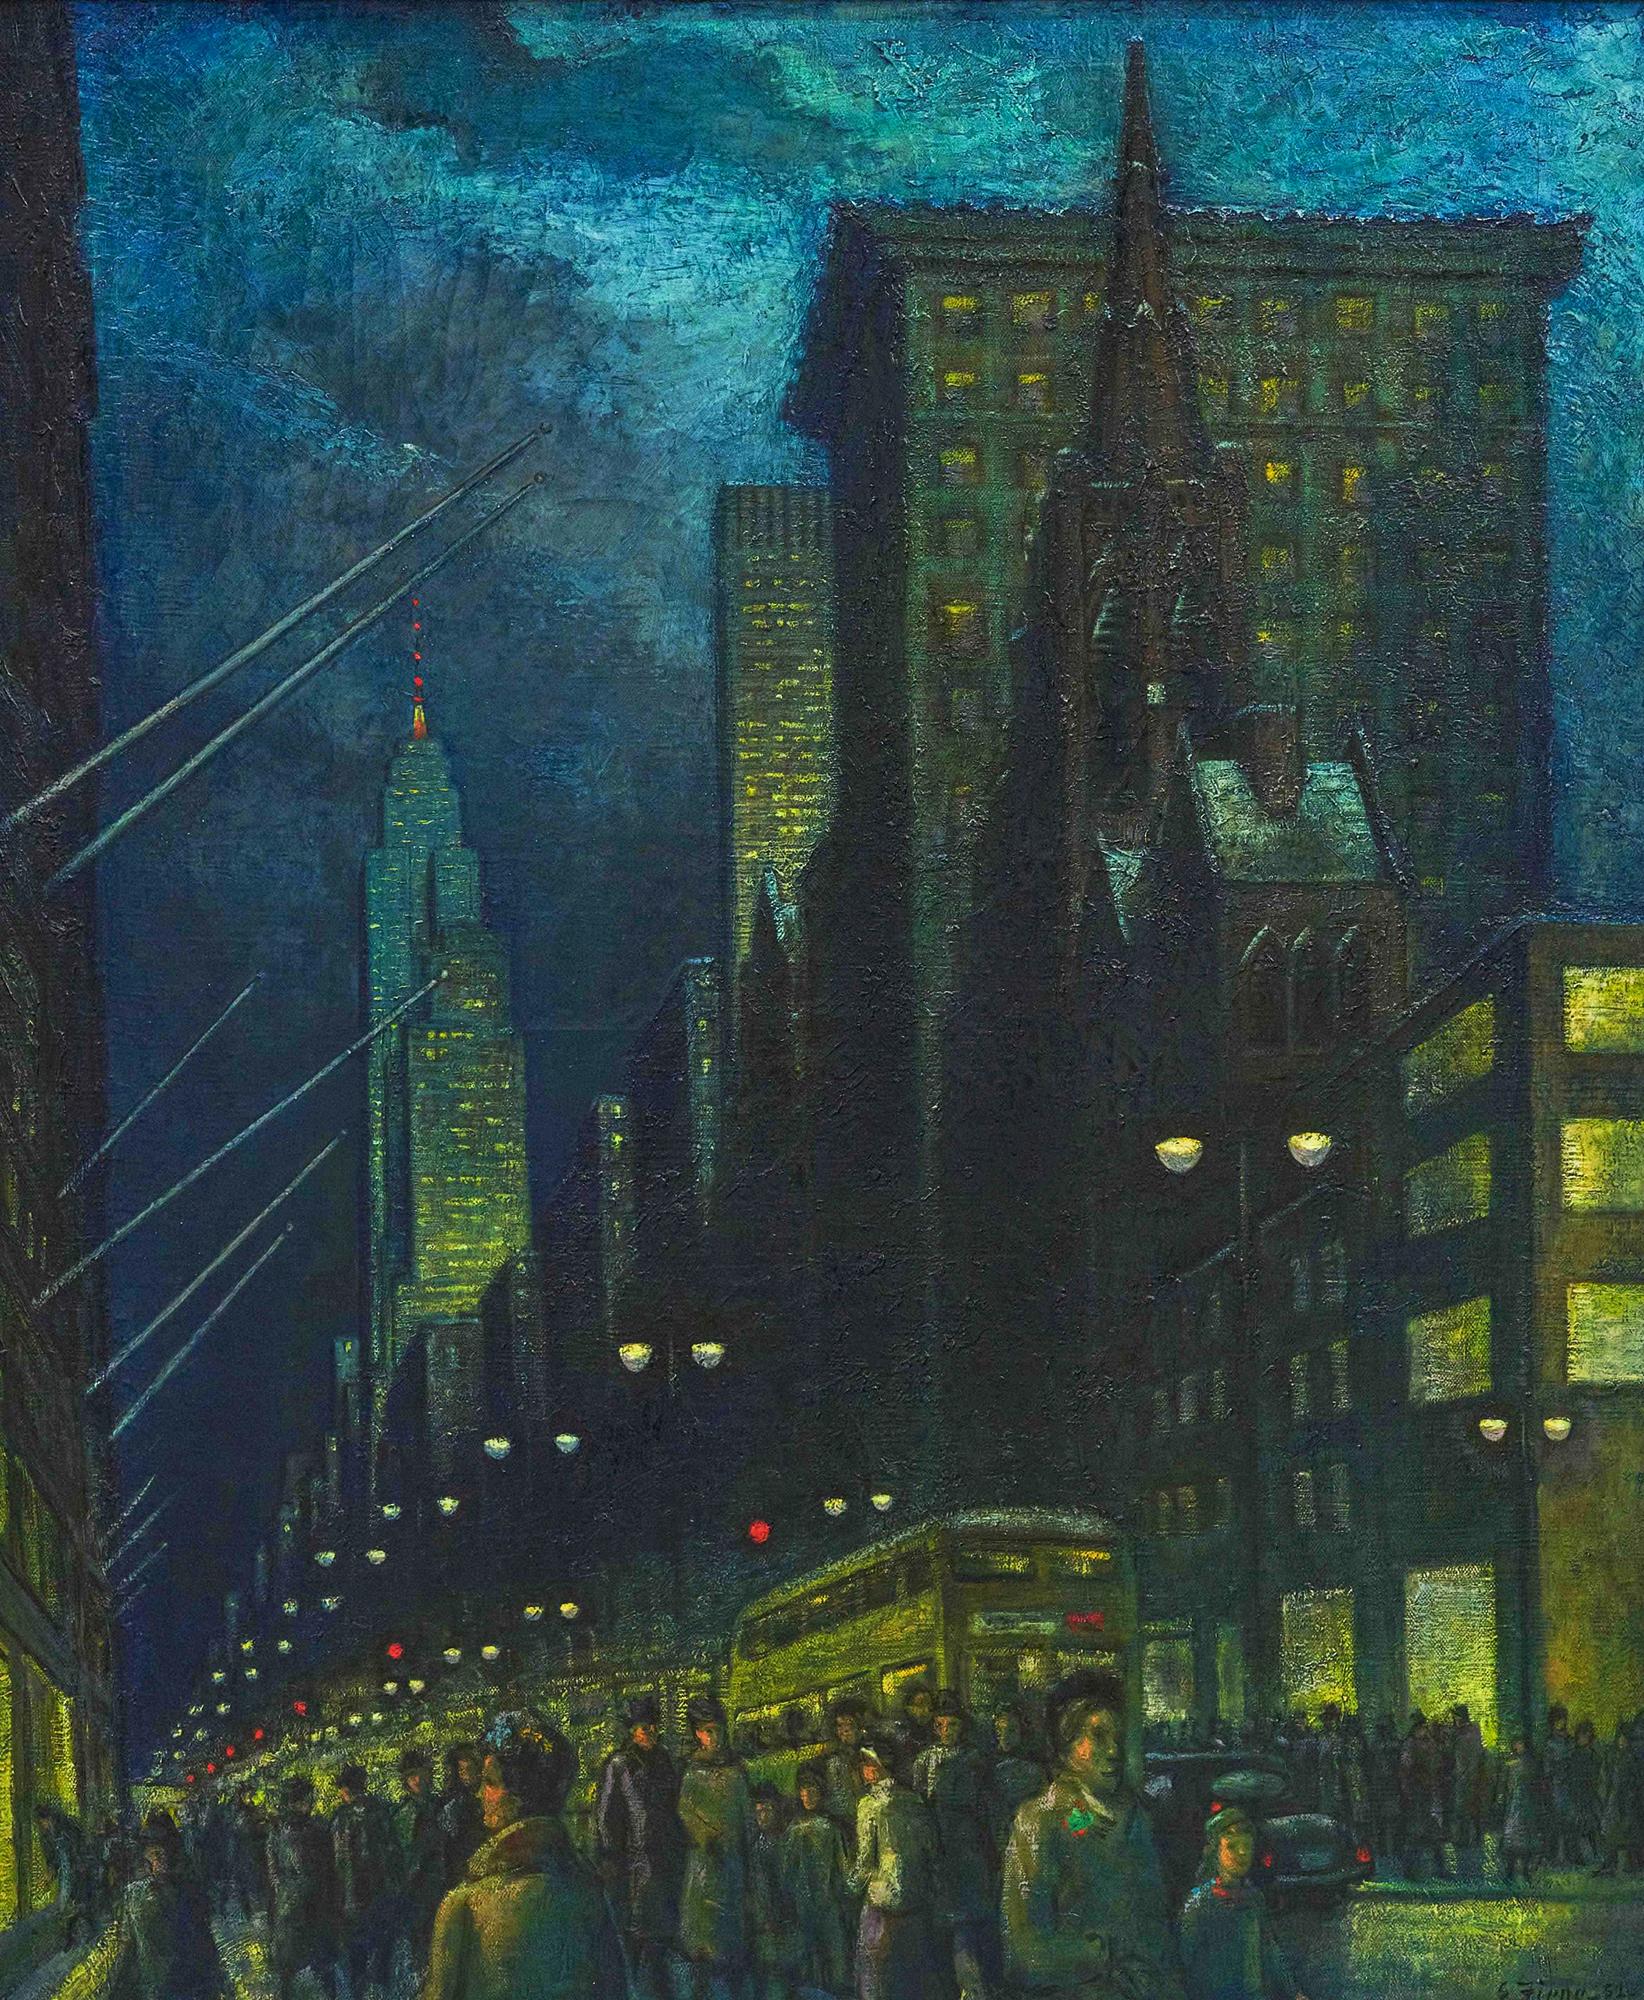 Landscape Painting Ernest Fiene - Fifth Avenue, soirée d'hiver - New York à la nuit